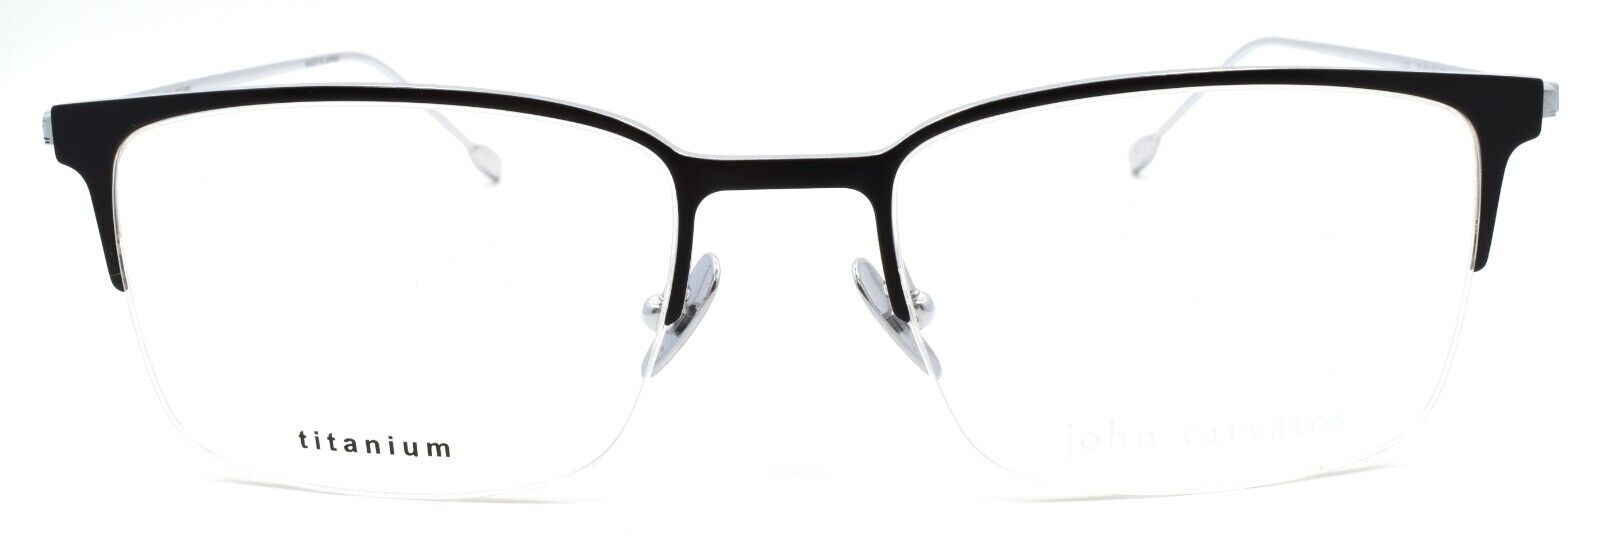 2-John Varvatos V172 Men's Eyeglasses Half-rim Titanium 55-19-145 Black / Silver-751286322835-IKSpecs